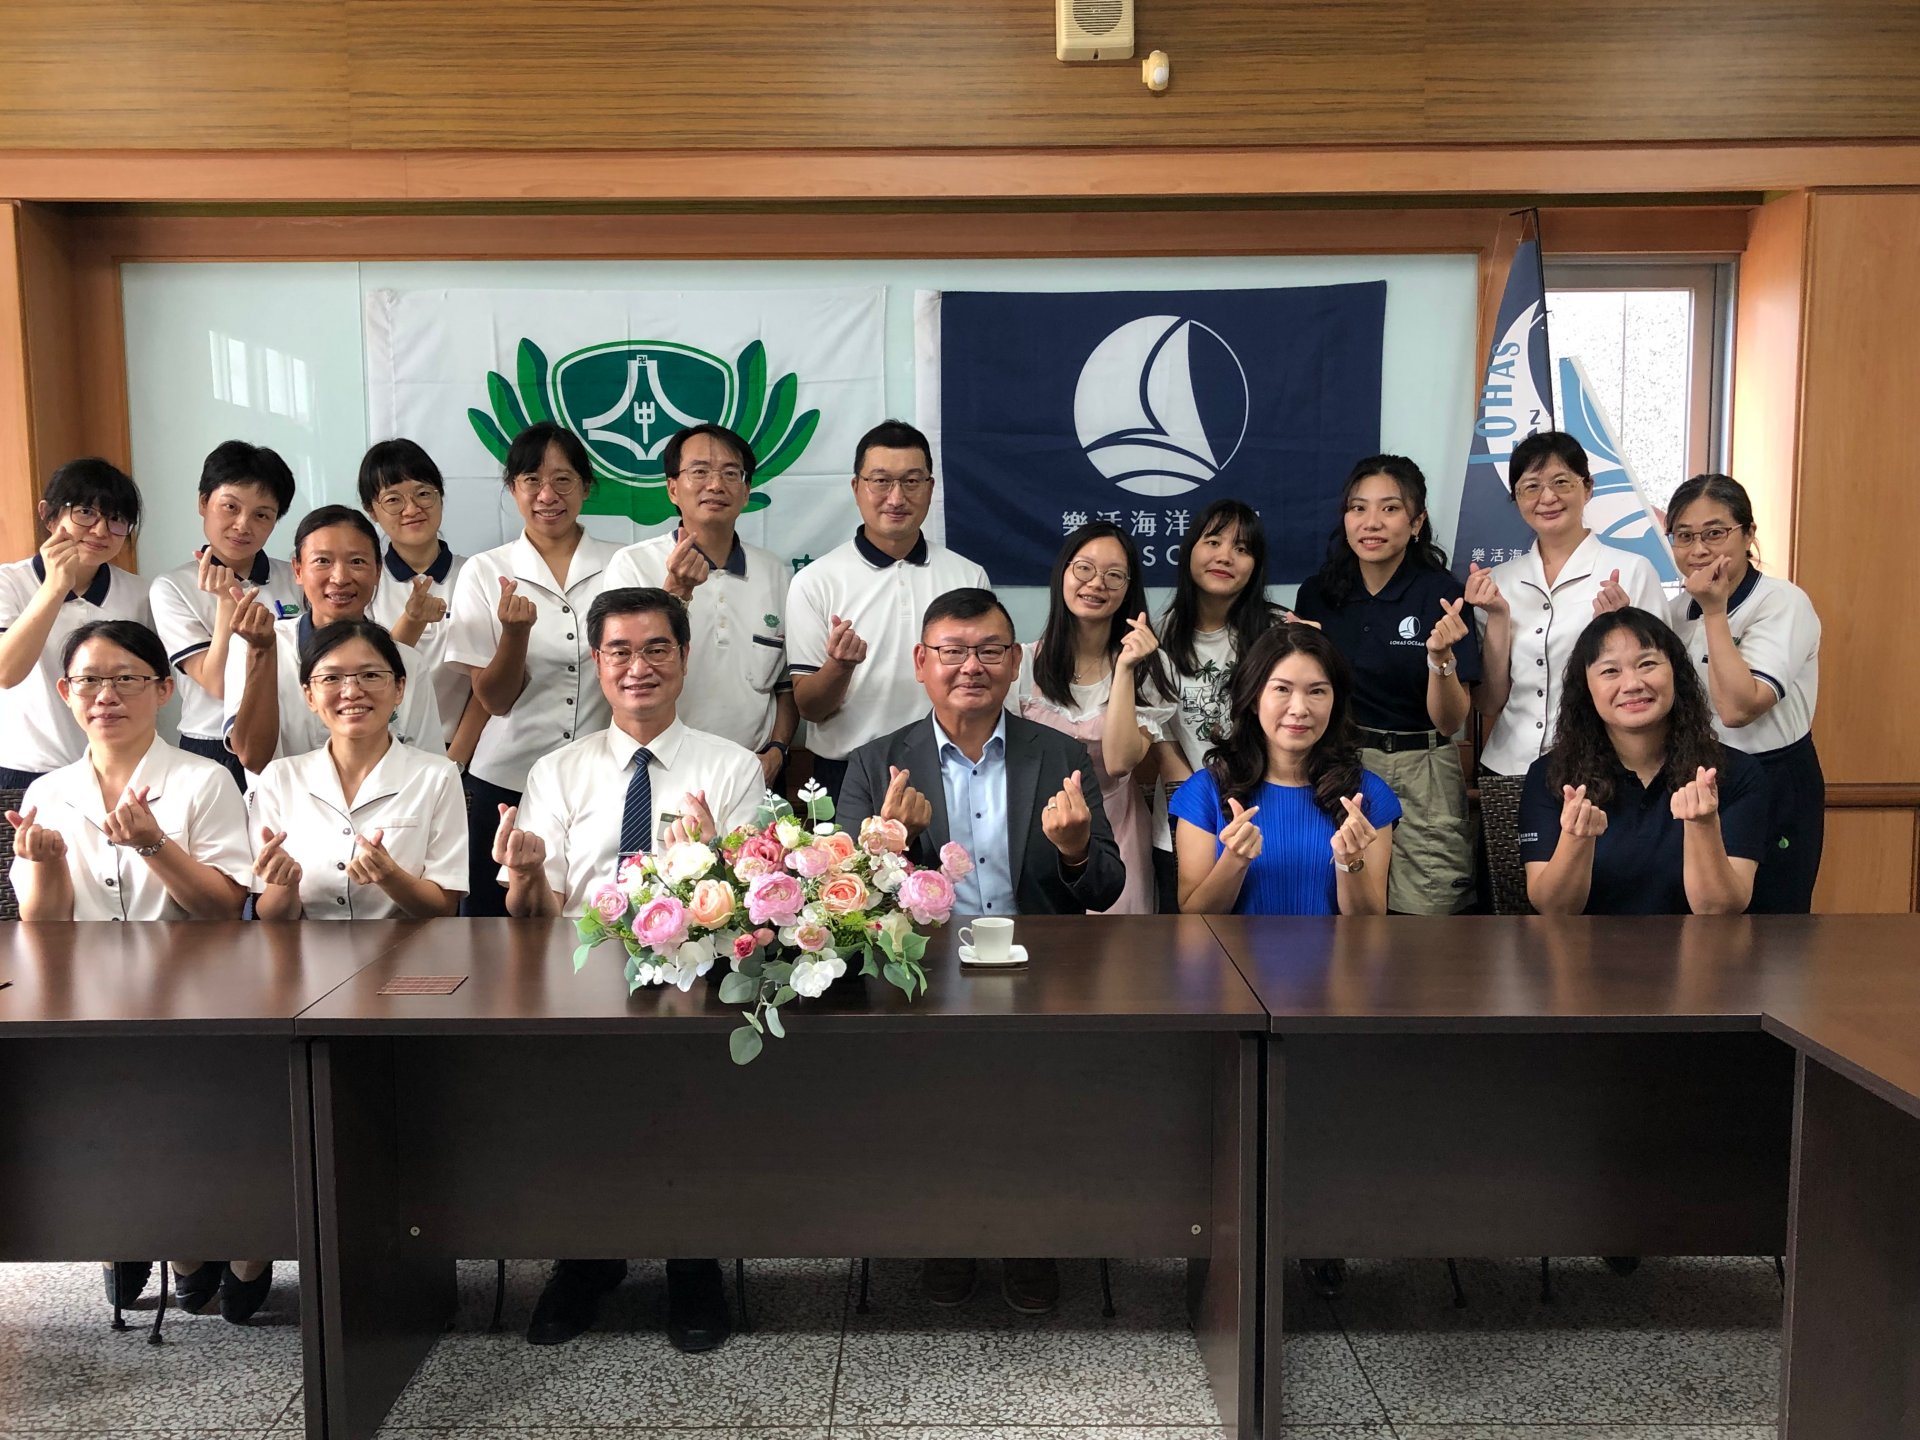 臺南慈中與樂活海洋學院於112年6月21日簽訂雙方合作備忘錄，期待透過雙方的合作共創永續海洋教育。